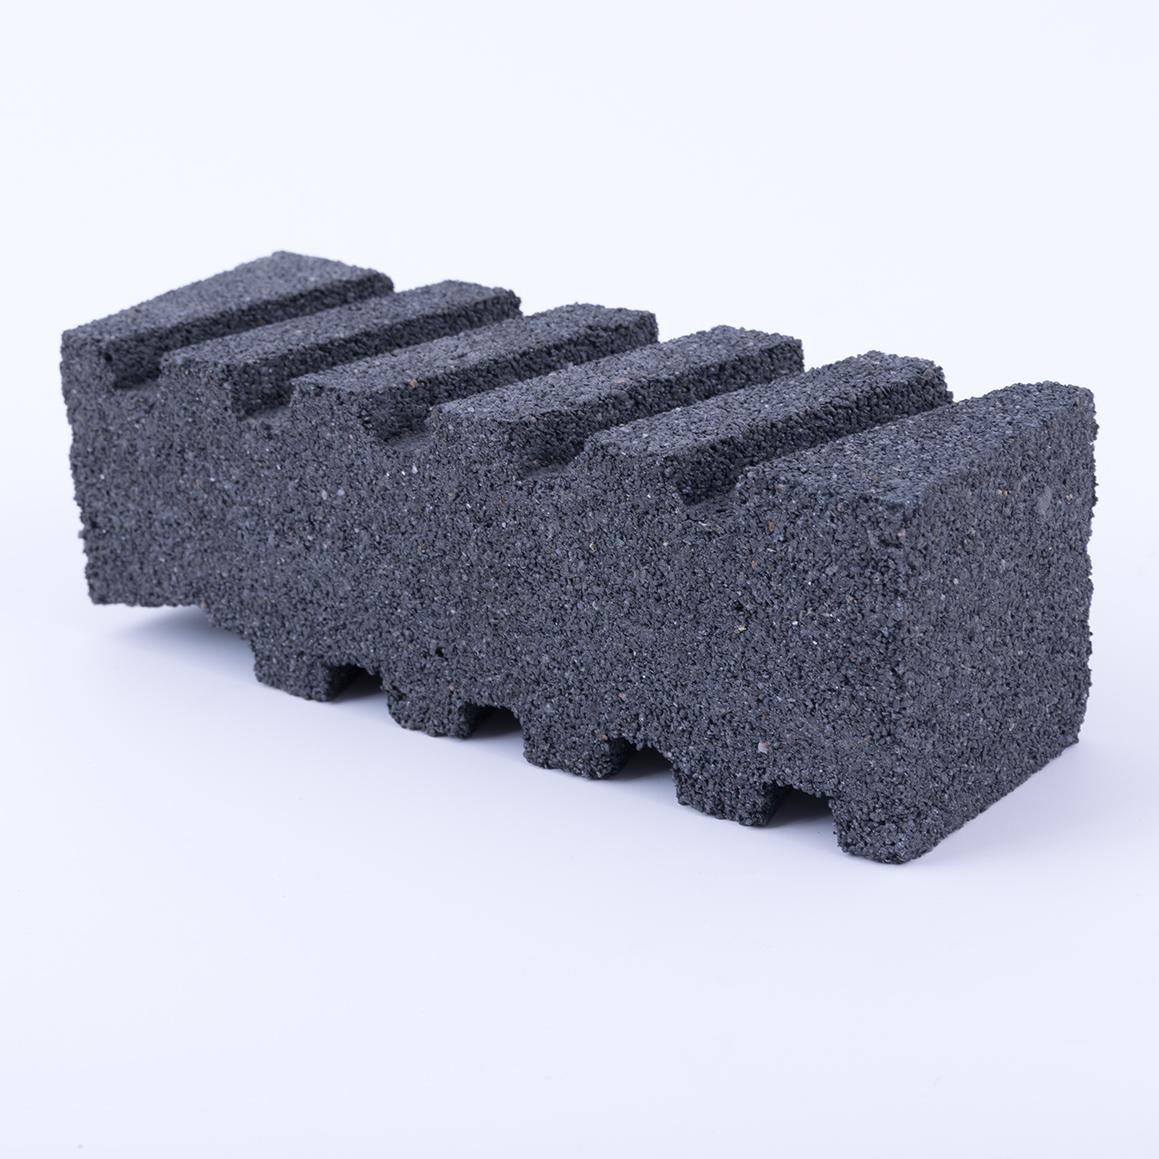 Concrete Rubbing Block